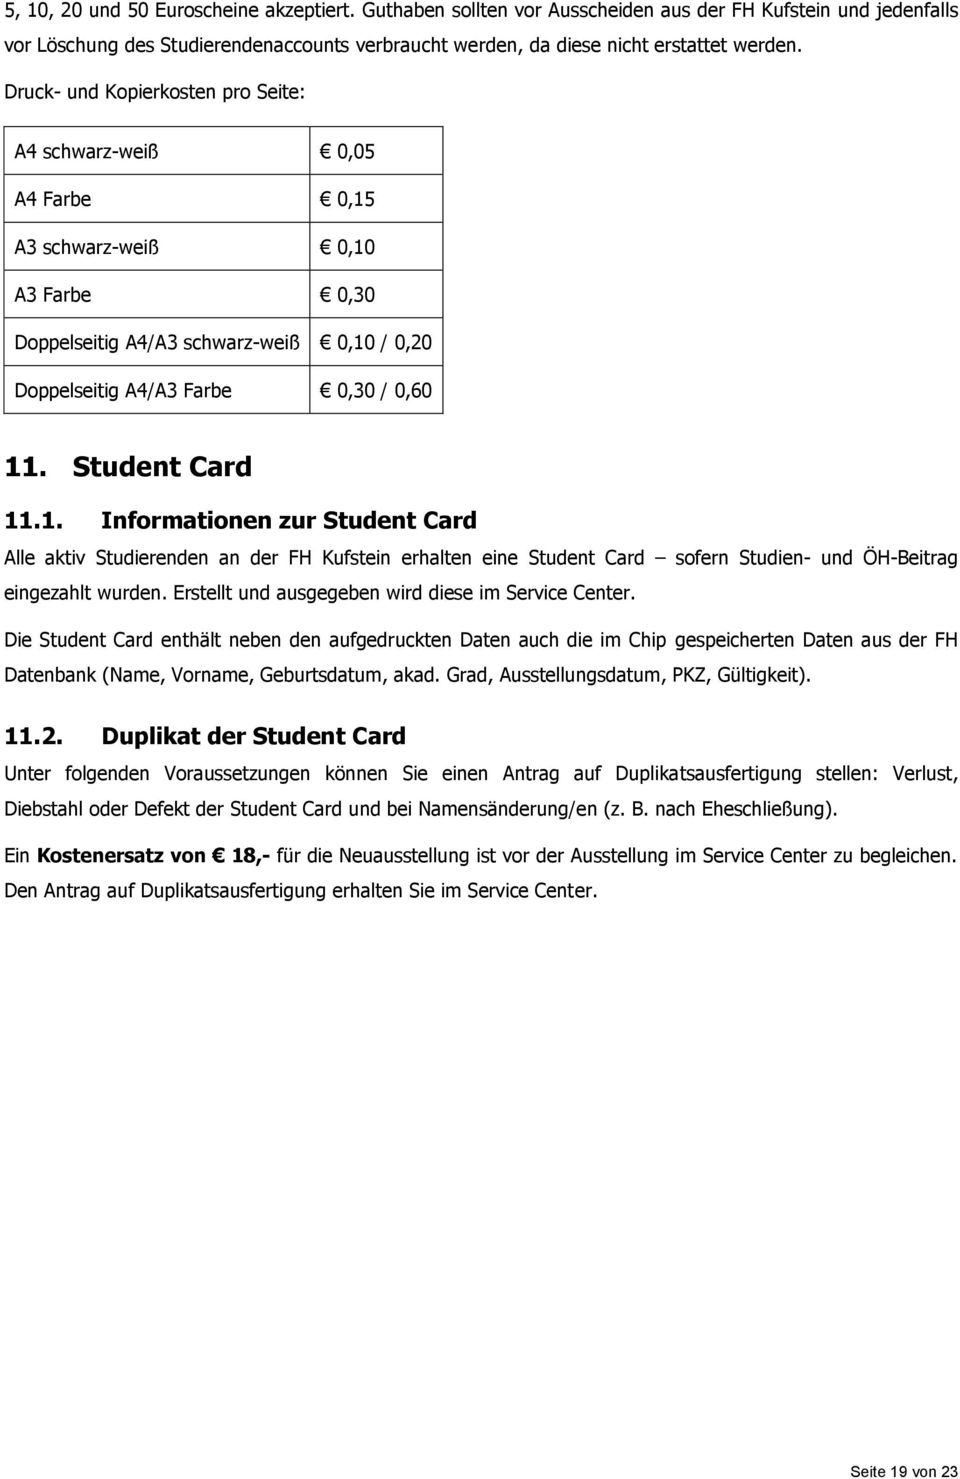 Student Card 11.1. Informationen zur Student Card Alle aktiv Studierenden an der FH Kufstein erhalten eine Student Card sofern Studien- und ÖH-Beitrag eingezahlt wurden.